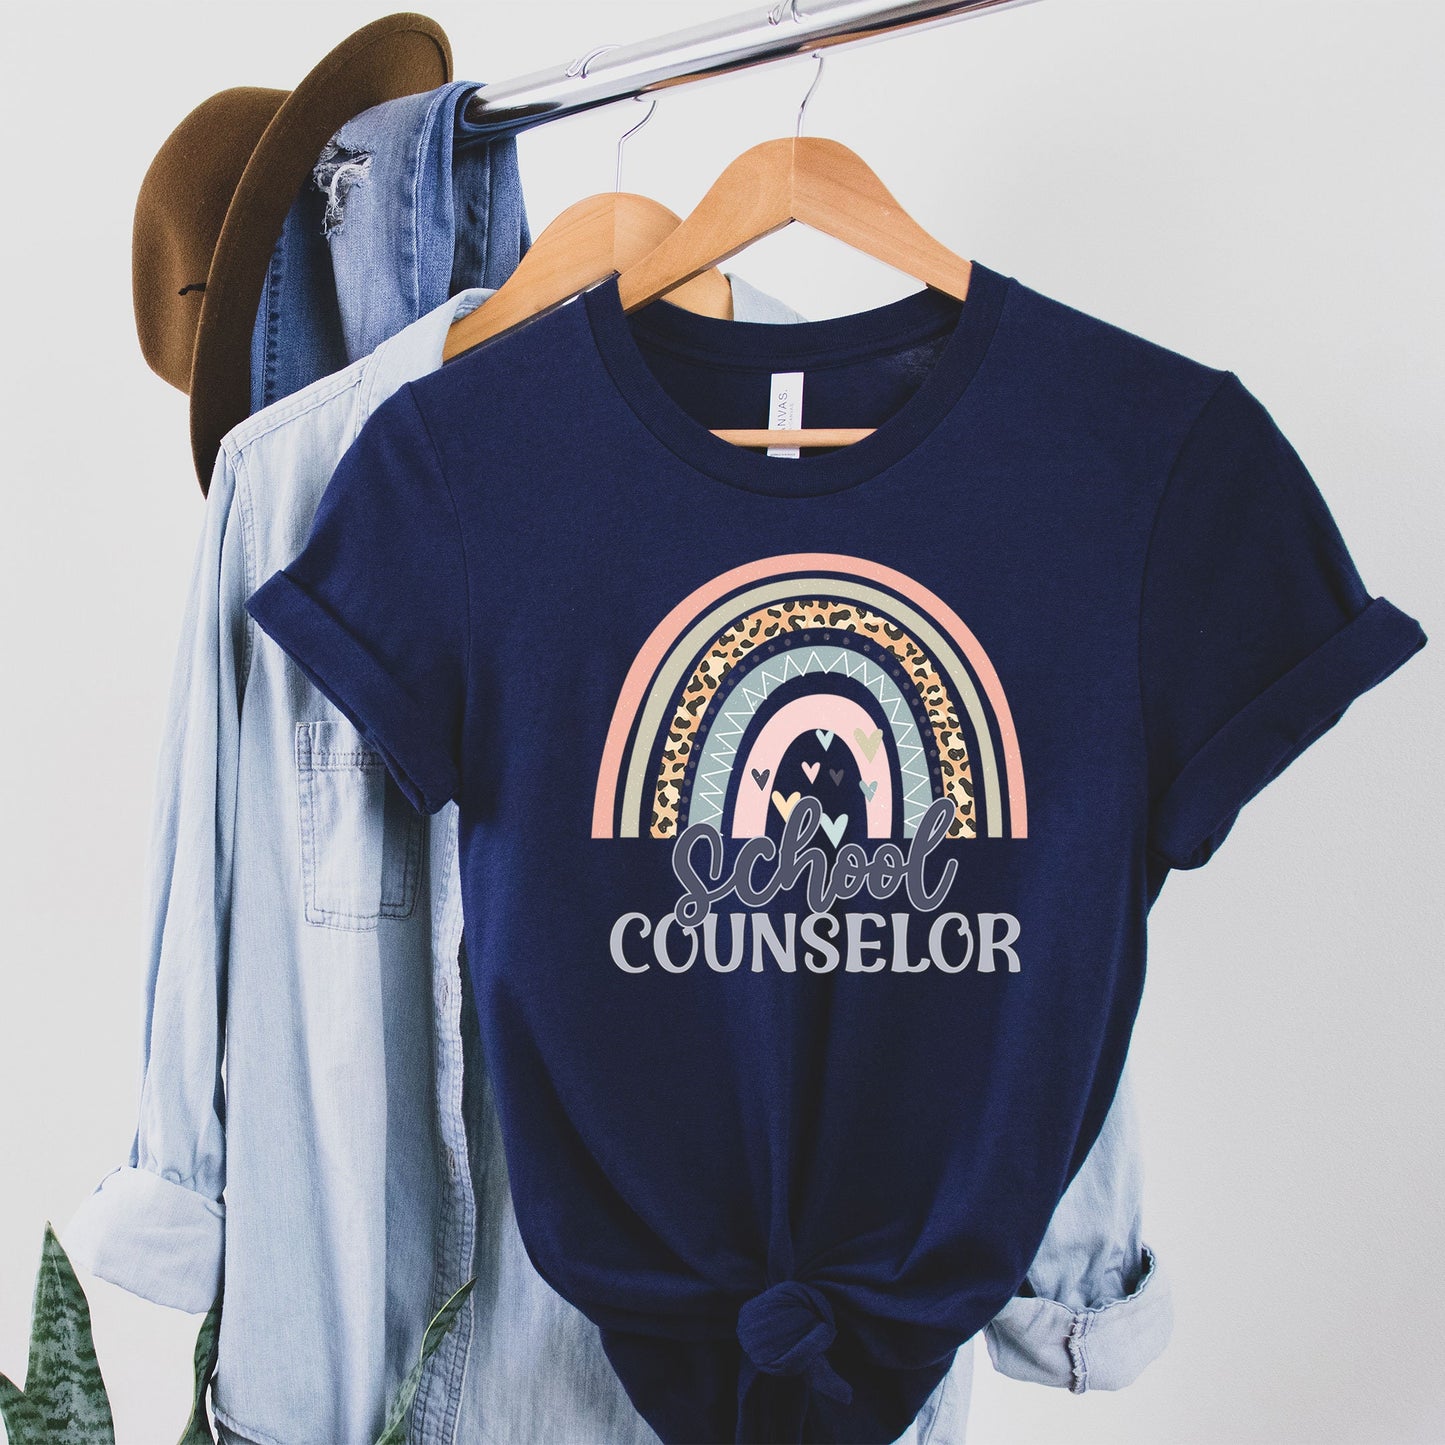 School Counselor Shirt, Rainbow Counselor Shirt, Guidance Counselor Tee Counseling Office, Counselor Birthday Gift, School Counselor T-Shirt